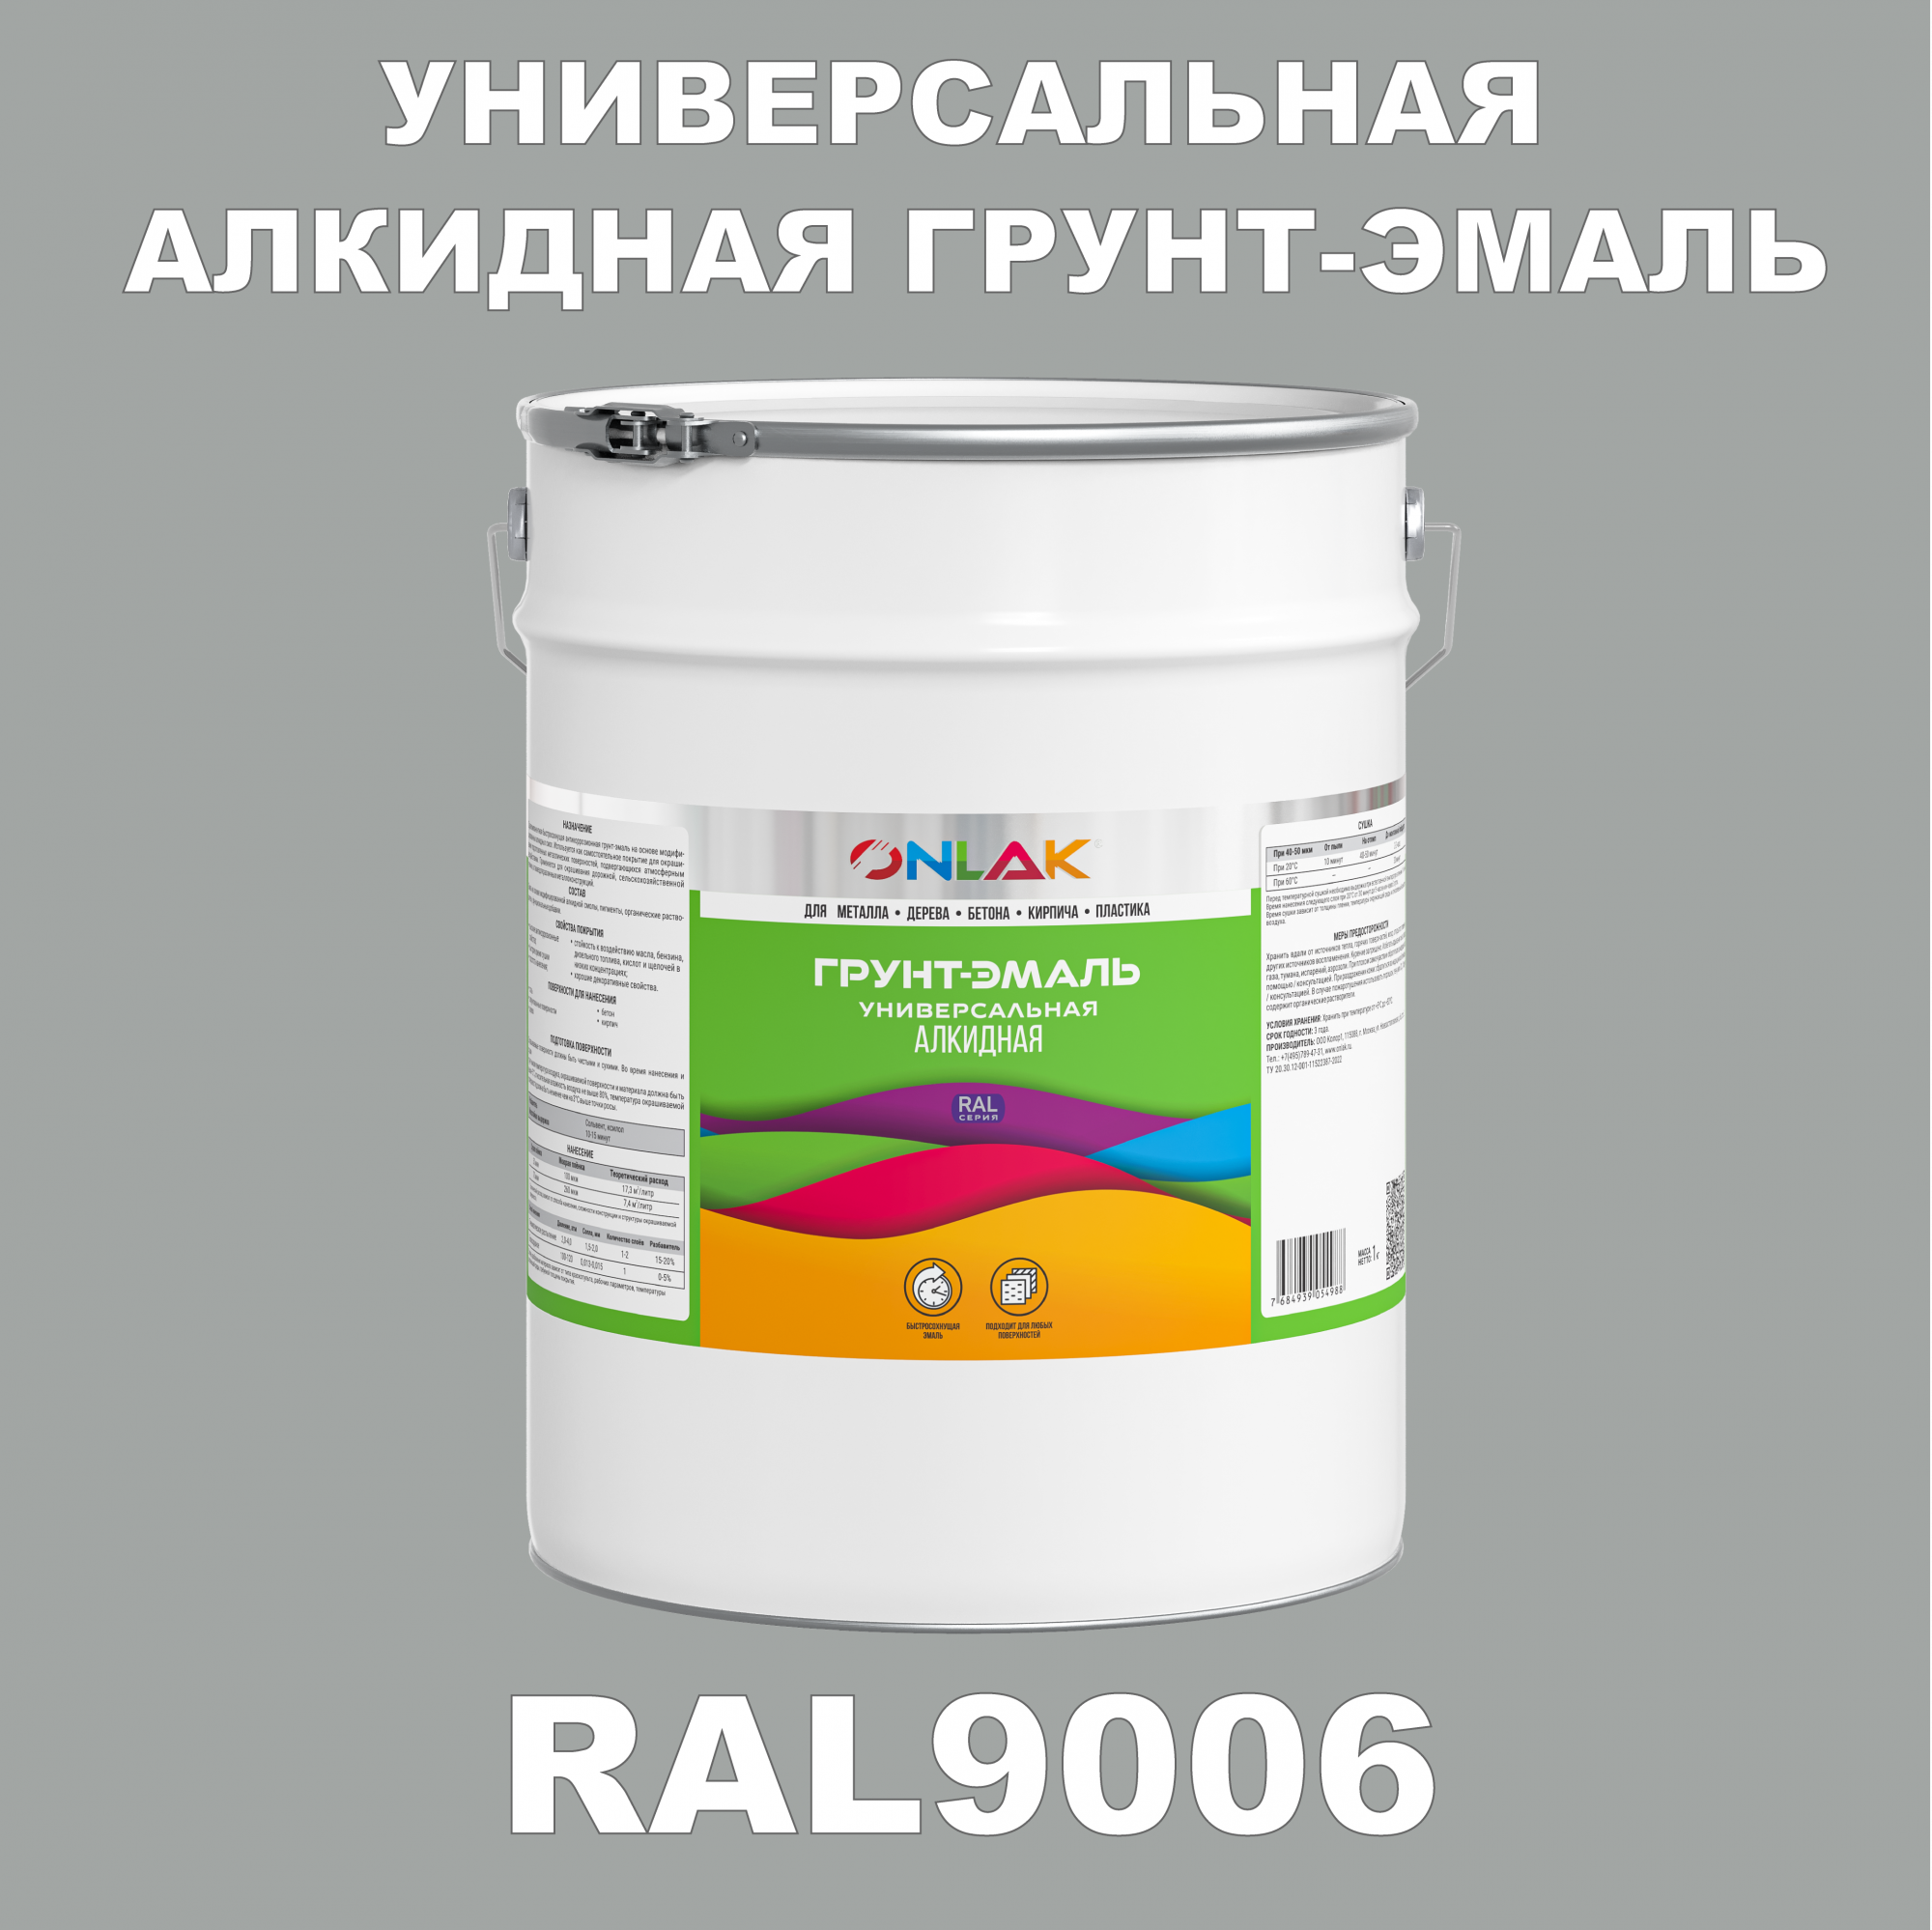 Грунт-эмаль ONLAK 1К RAL9006 антикоррозионная алкидная по металлу по ржавчине 20 кг грунт эмаль аэрозольная престиж 3в1 алкидная коричневая ral 8017 425 мл 0 425 кг